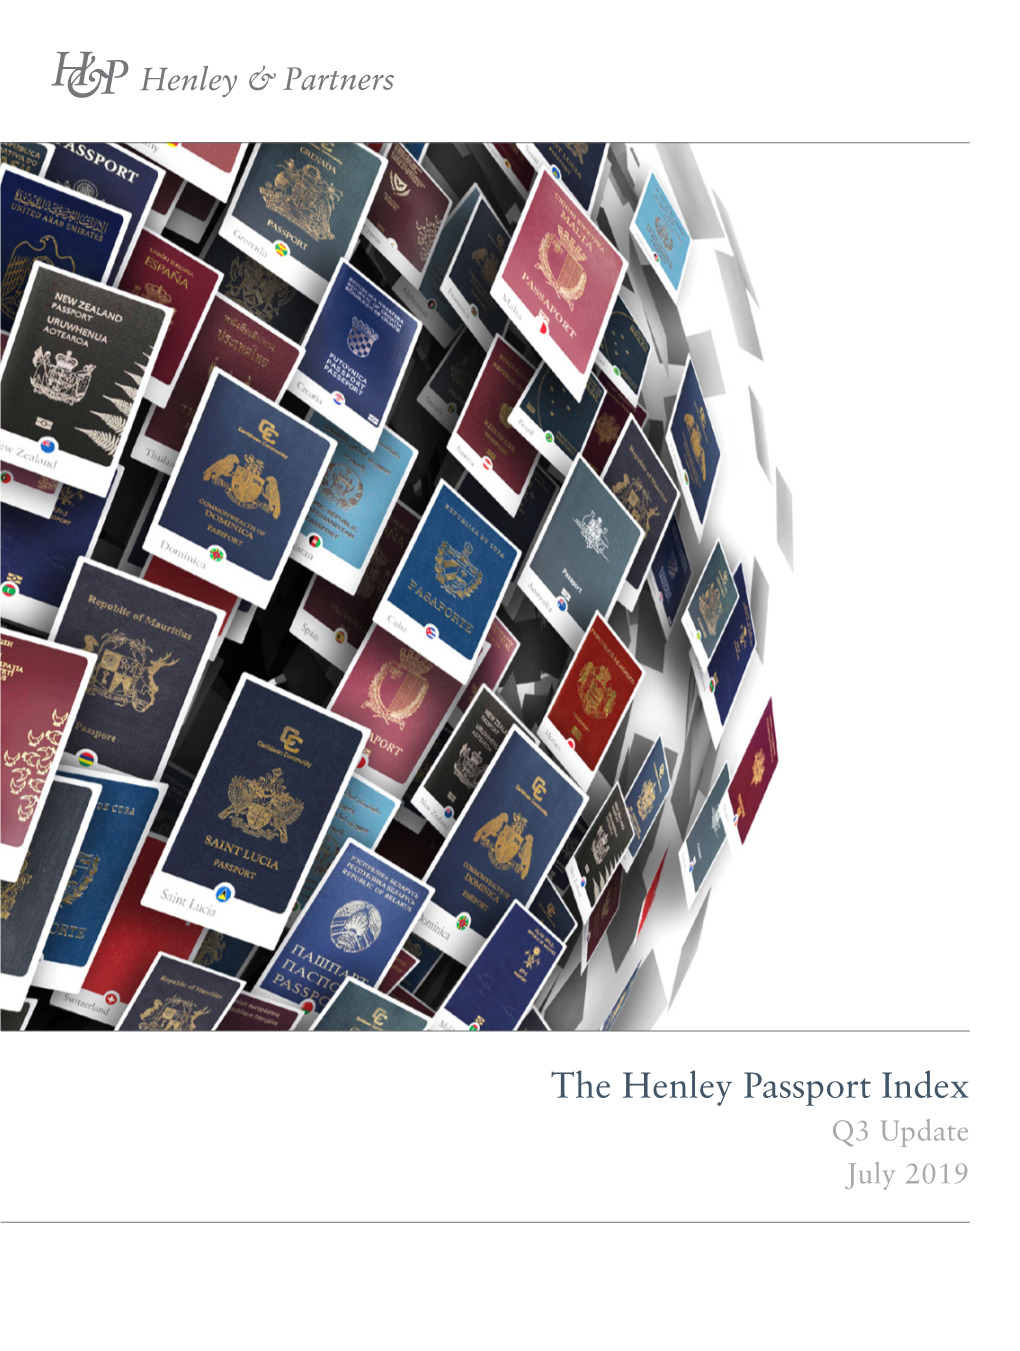 Q3 Update July 2019 Henley Passport Index